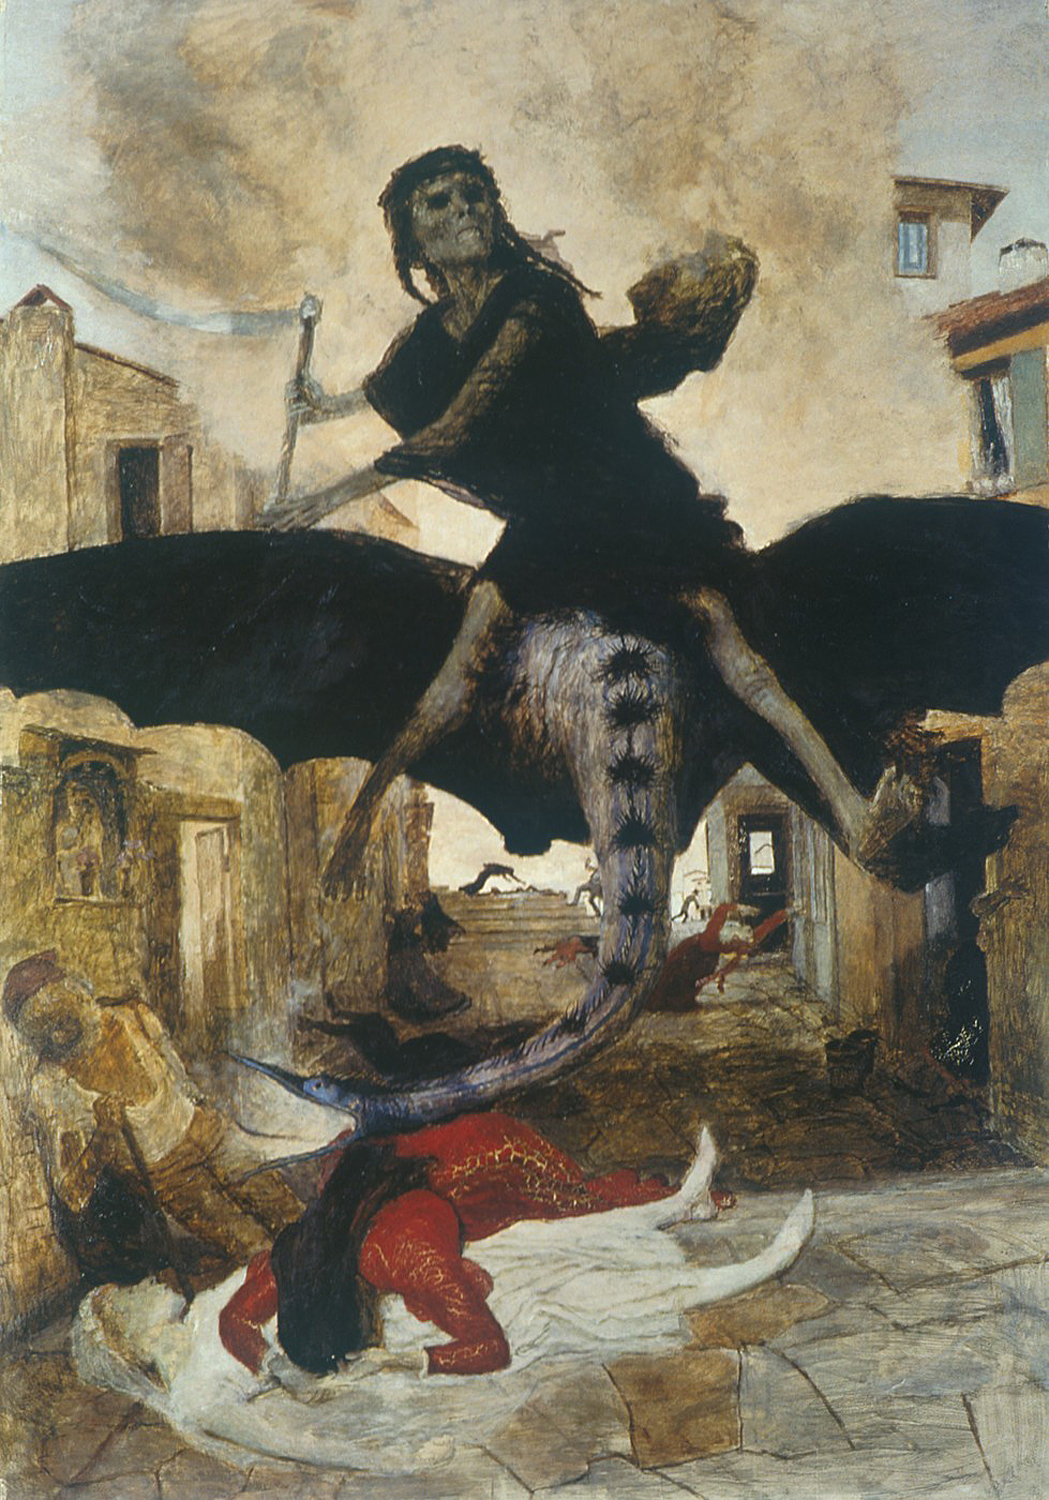 Avui parlem de ‘La Peste’, obra d’Arnold Böcklin, exposada al Museu de Basilea